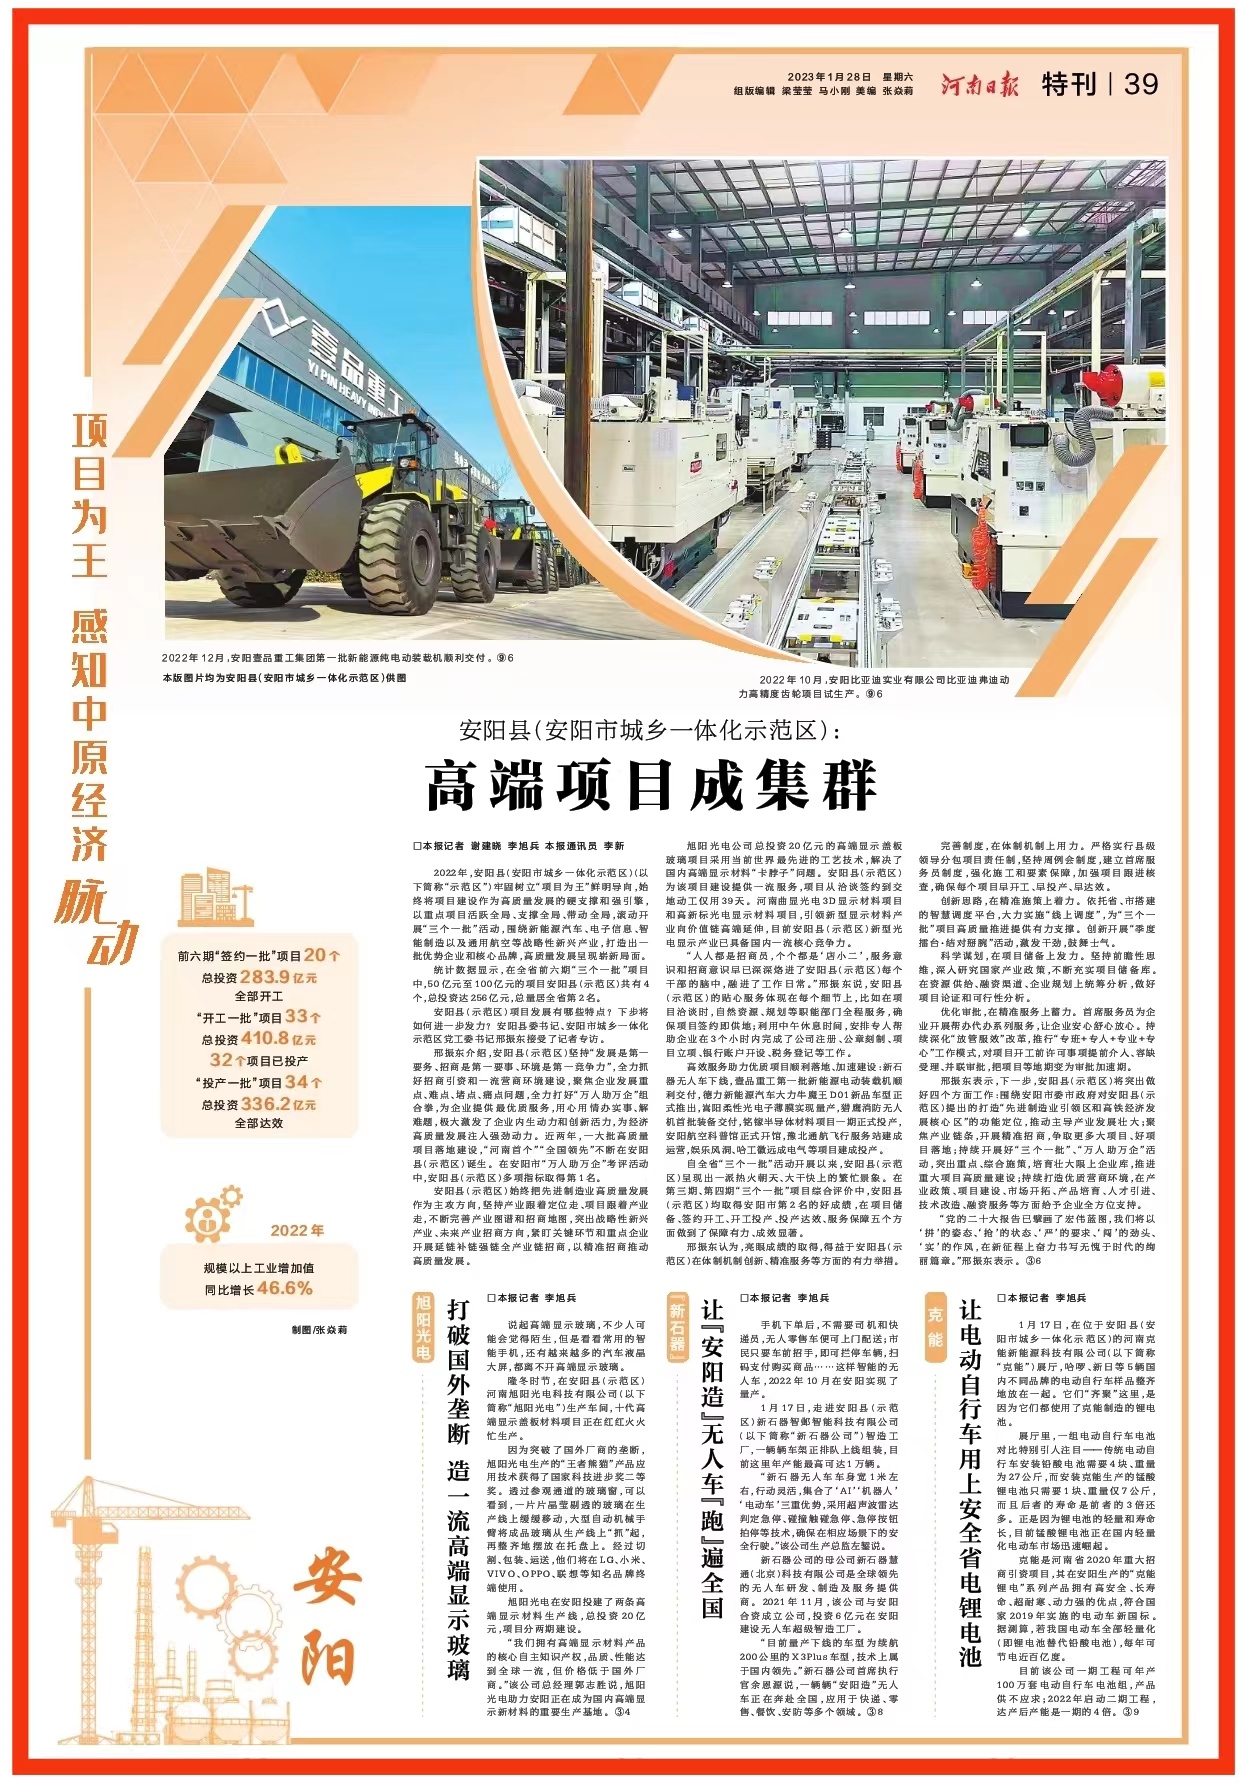 春节后上班第一天，安阳县（示范区）一件大事在河南日报整版呈现